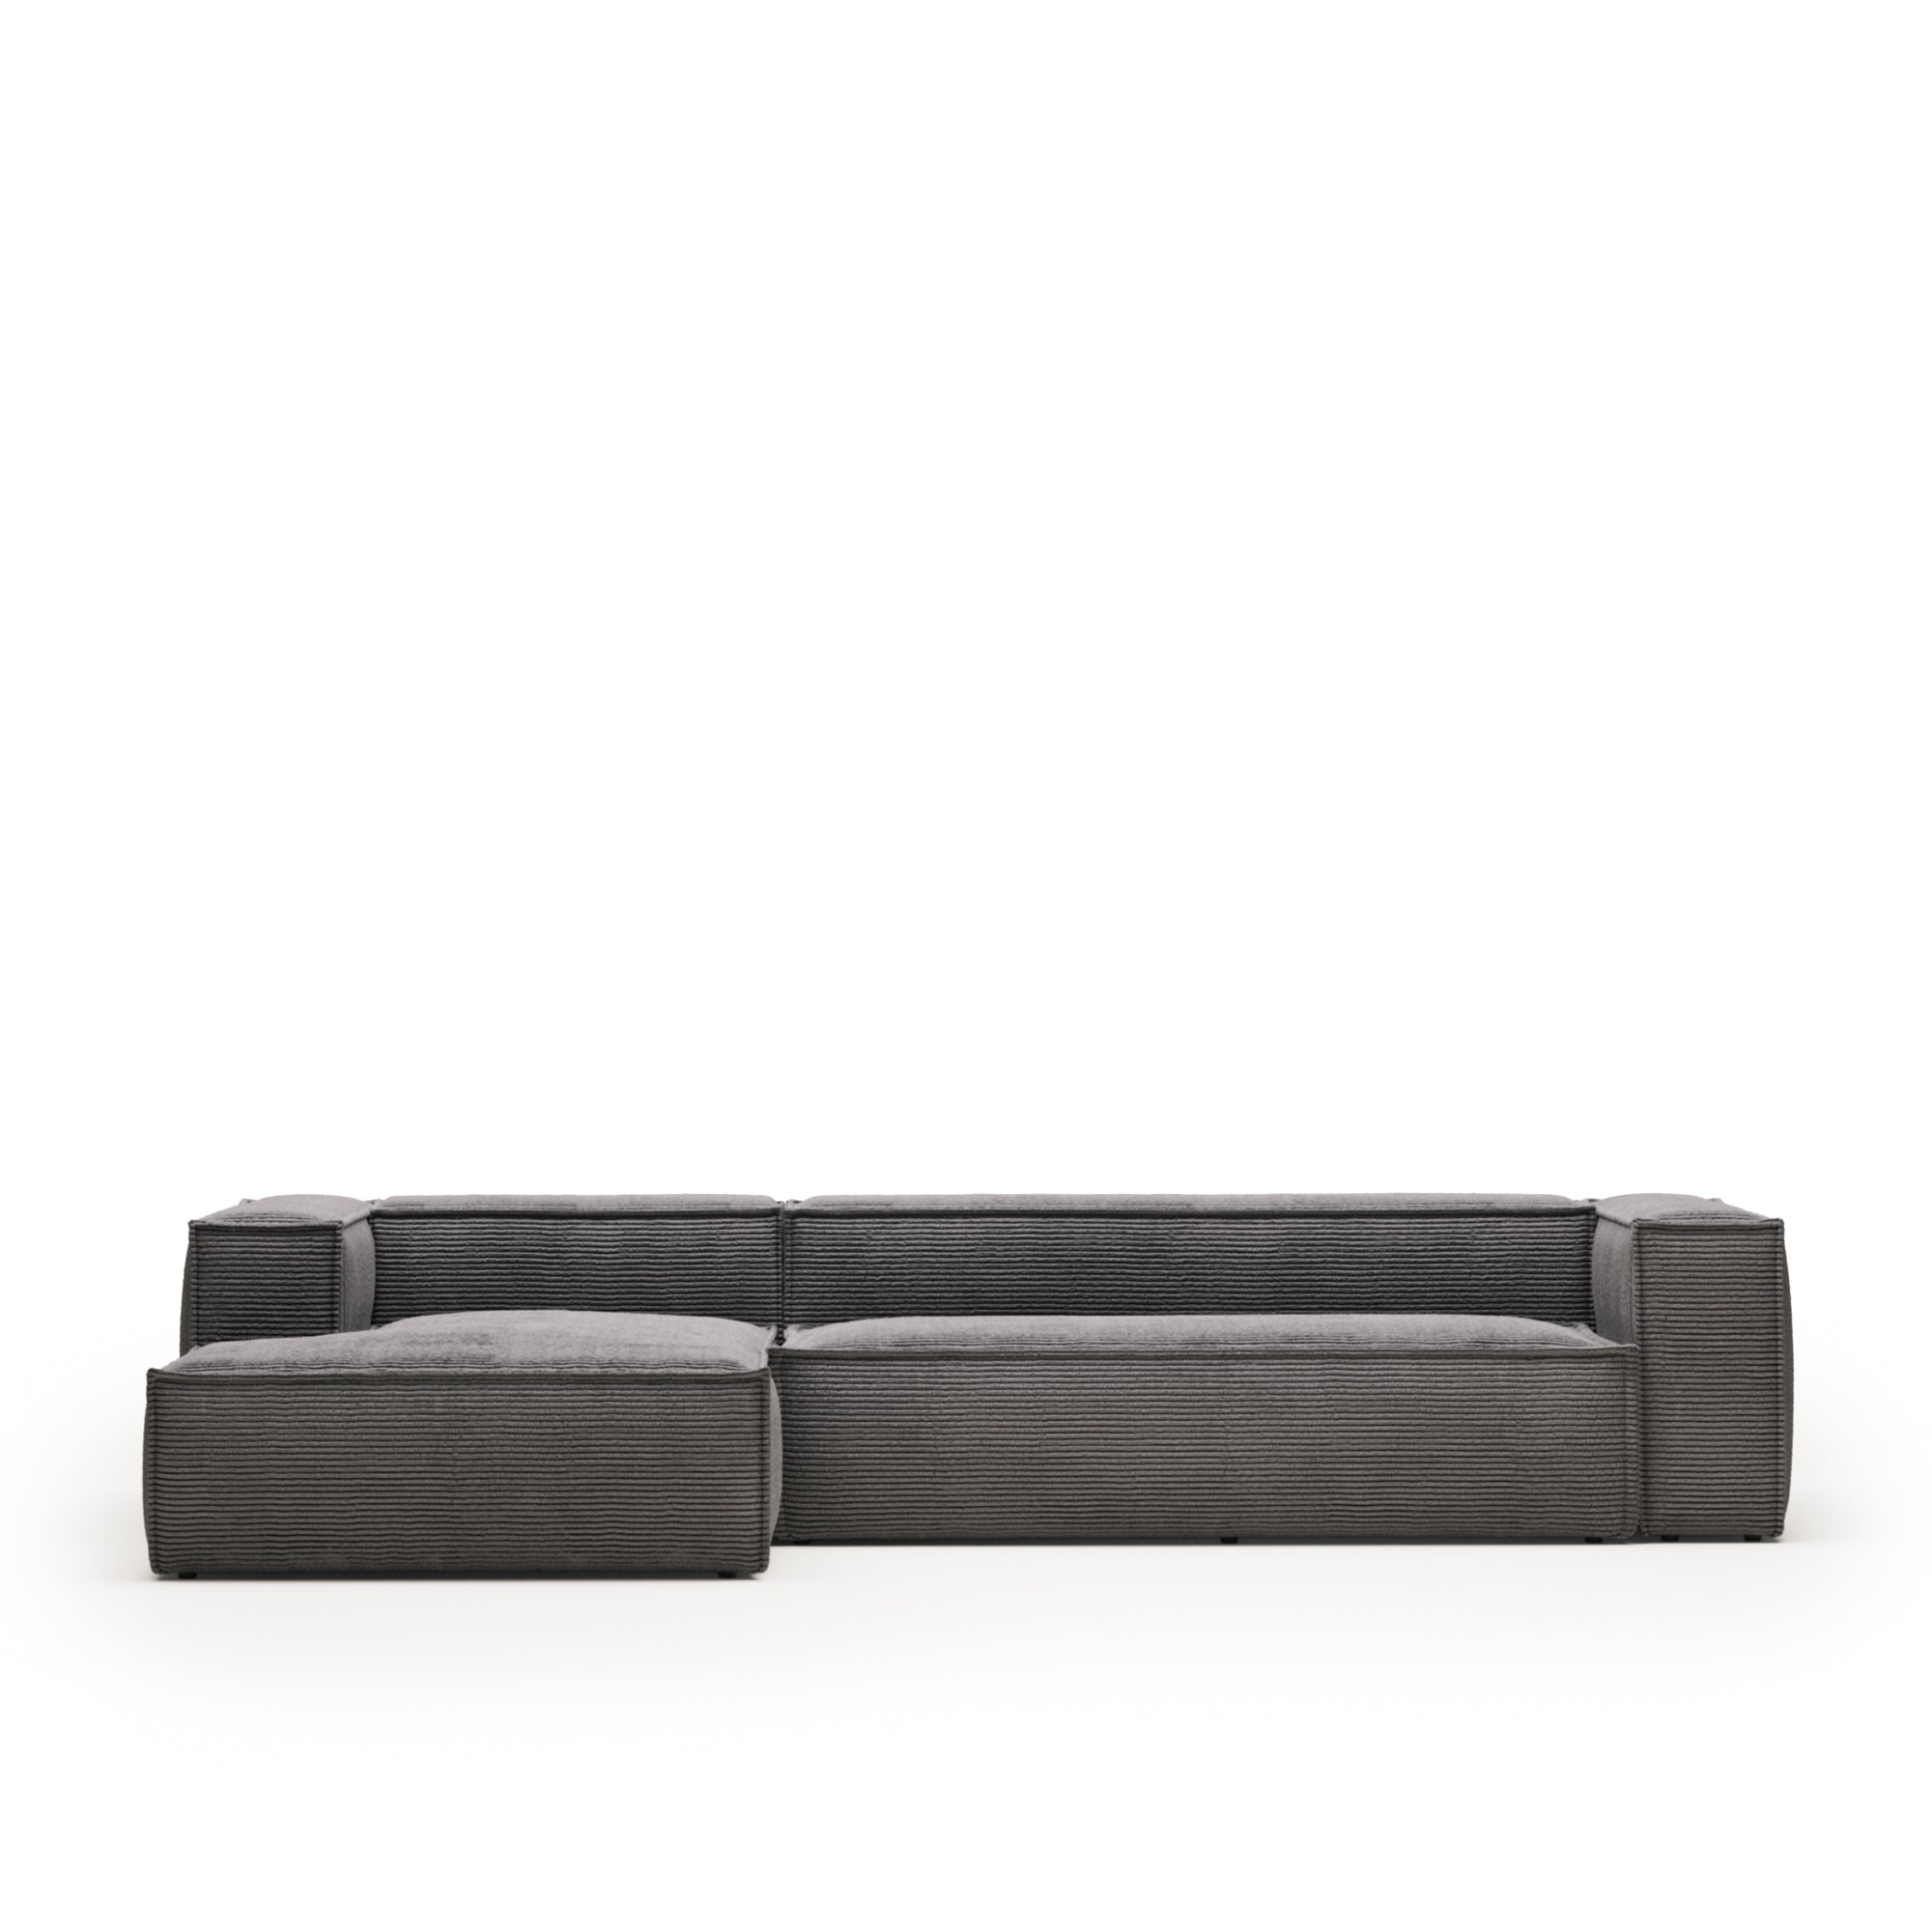 Blok 4 személyes kanapé bal oldali fekvőfotellel, szürke széles varrású kordbársonyból, 330 cm